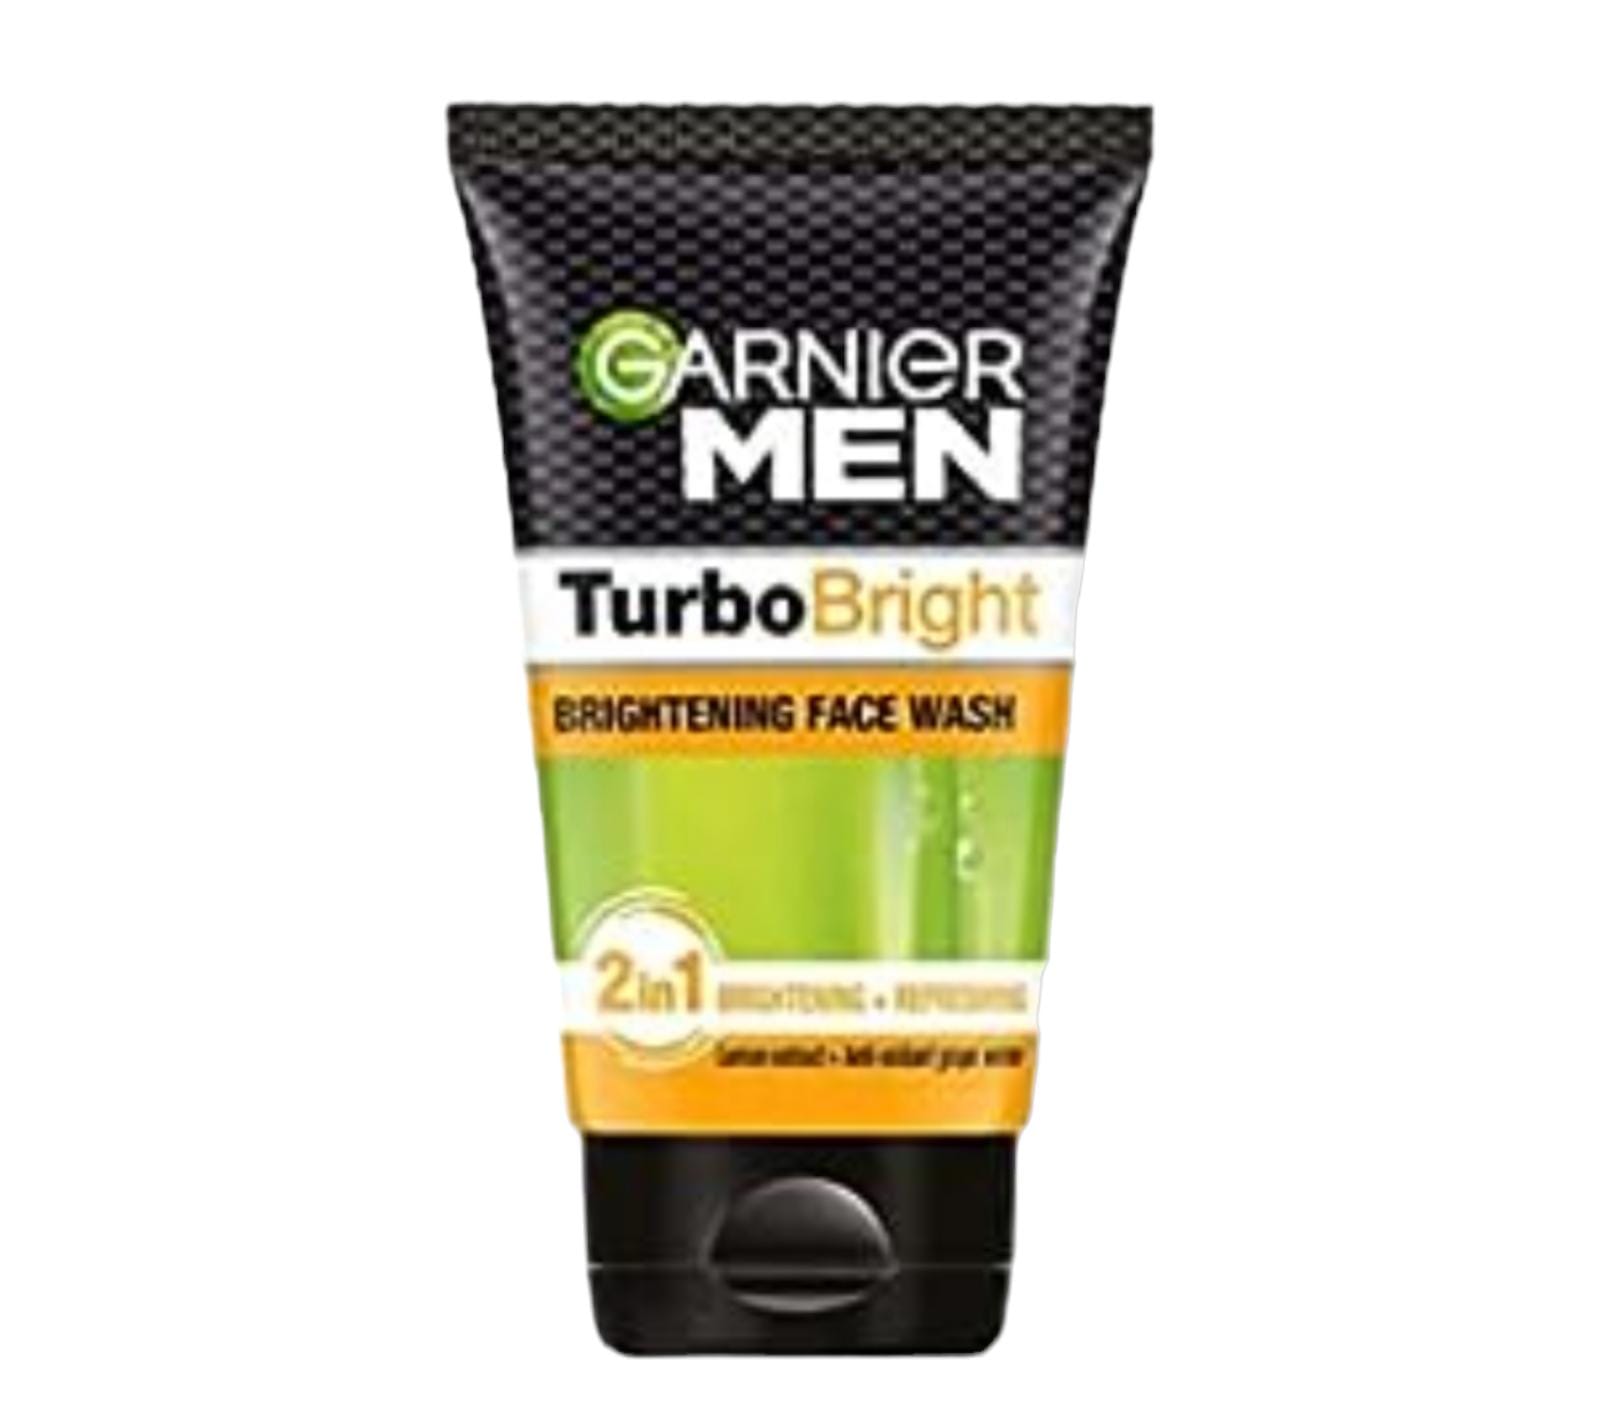 Garnier Men Turbo Bright